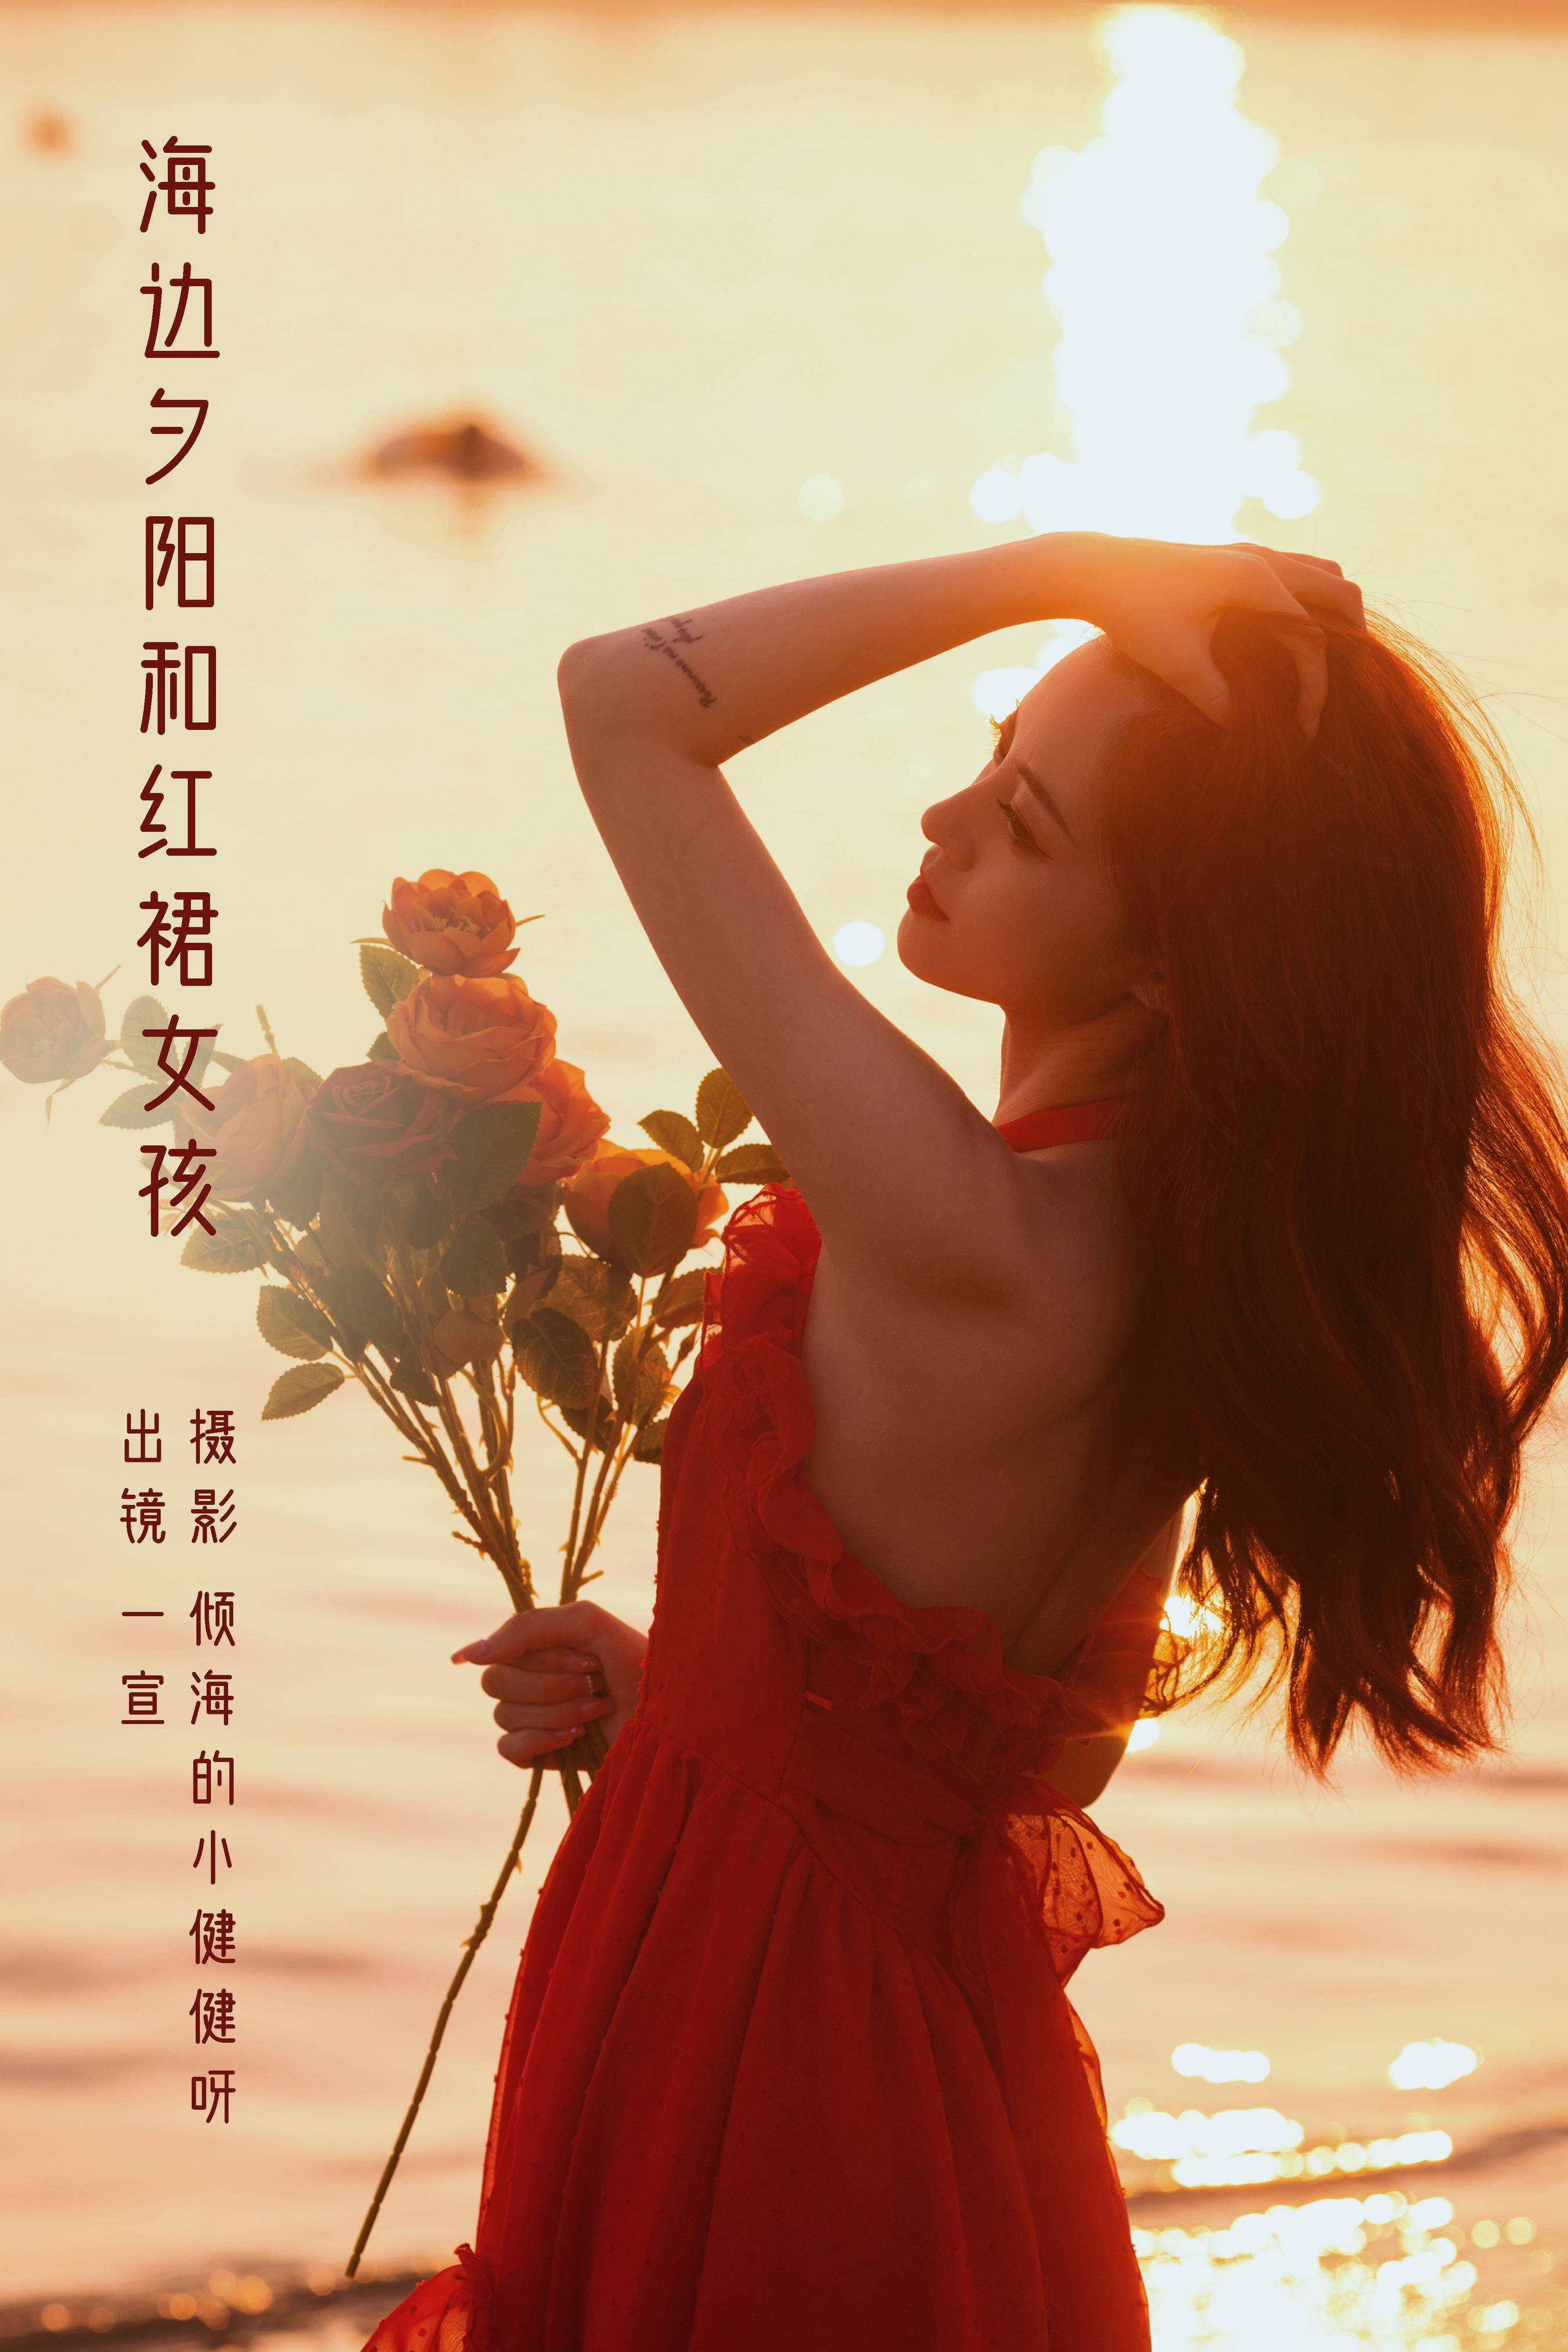 海边夕阳和红裙女孩 漂亮 女神 夕阳 花&YiTuYu艺图语-1